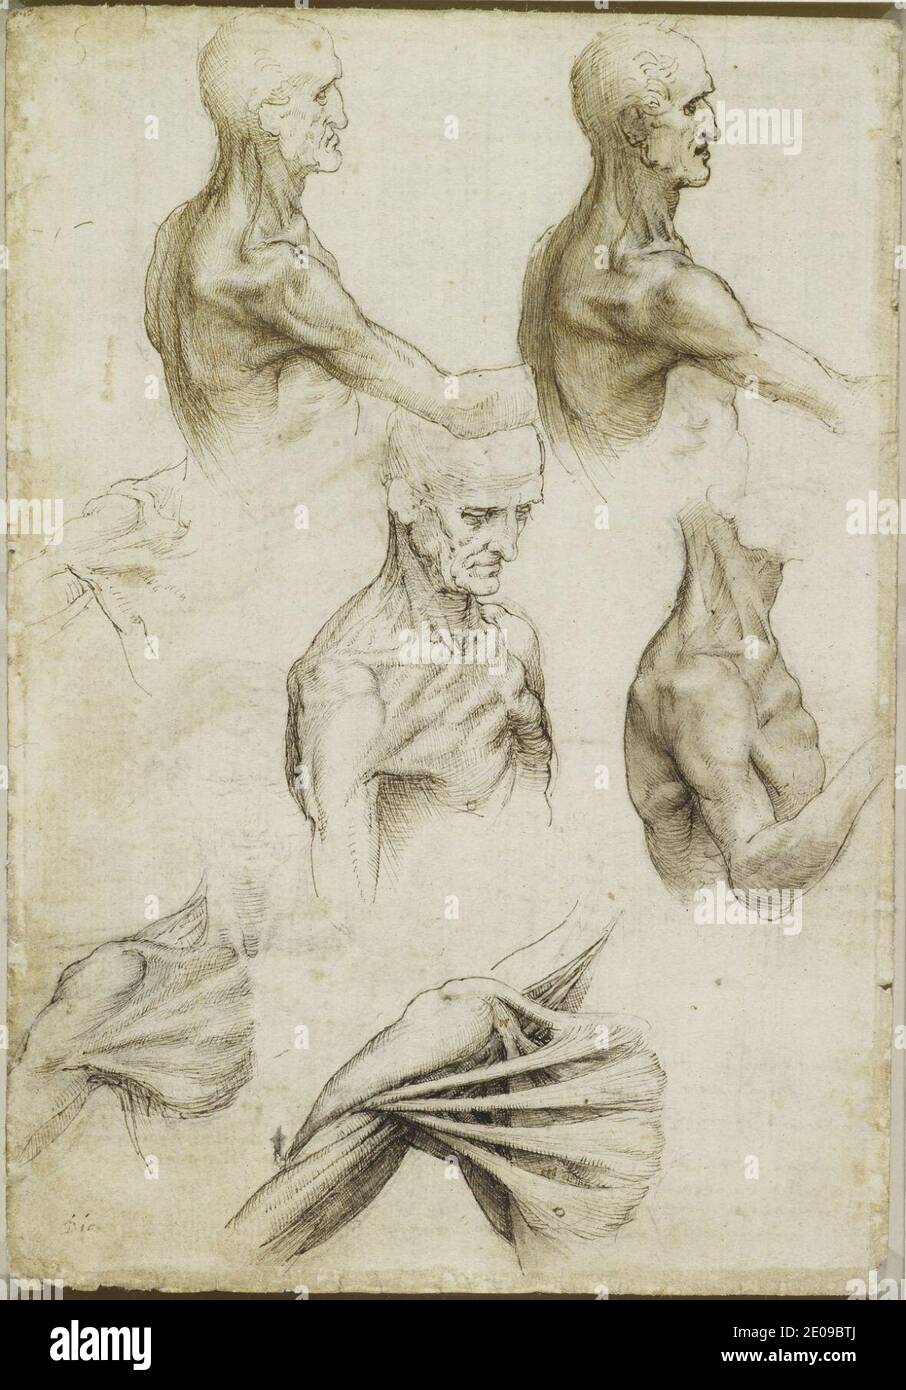 Millésime Anatomie LEONARDO da VINCIAnatomie superficielle de lépaule et du cou 14ème-15ème siècle Format A3 Papiers Brillants de 250g Affiches de Reproduction